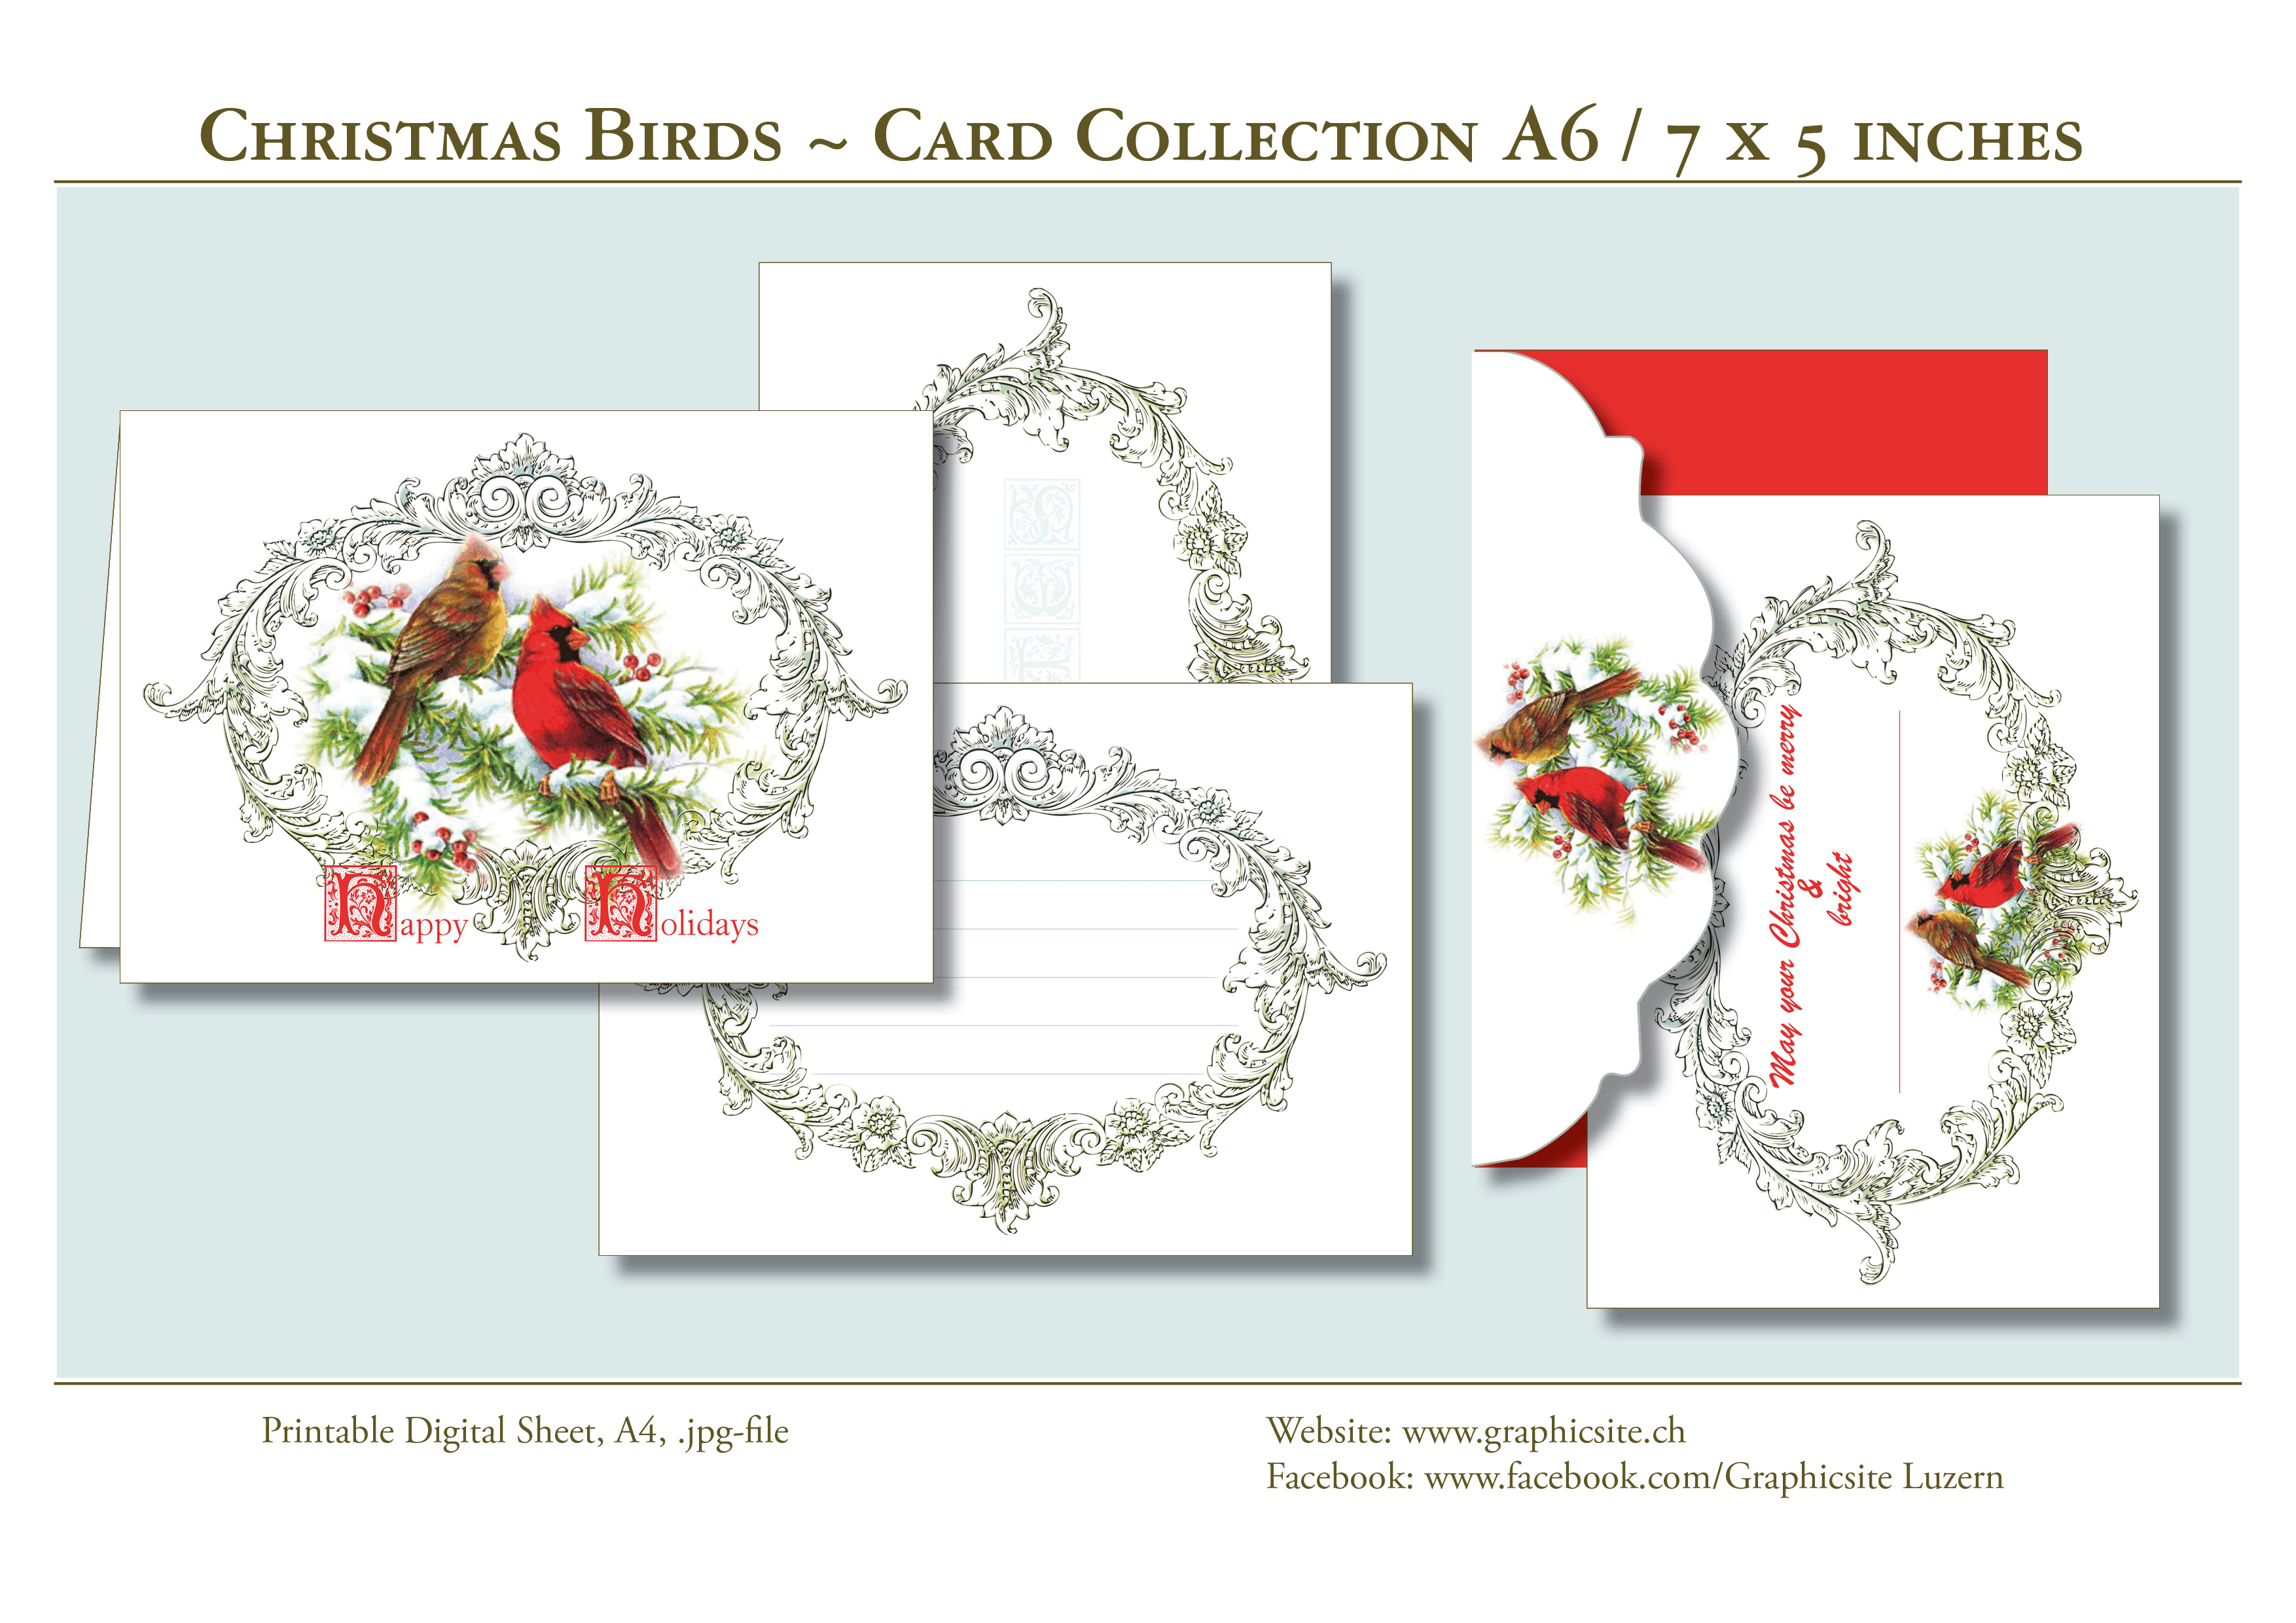 Karten selber drucken - Weihnachtskarten, Grusskarten, Blau, Weiss,  -  Kuvert - #schnee, #vögel, #weihnachtskarten, #karten, #selber, #drucken, #gestalten, #grusskarten, #A6,  #basteln, #luzern, #schweiz